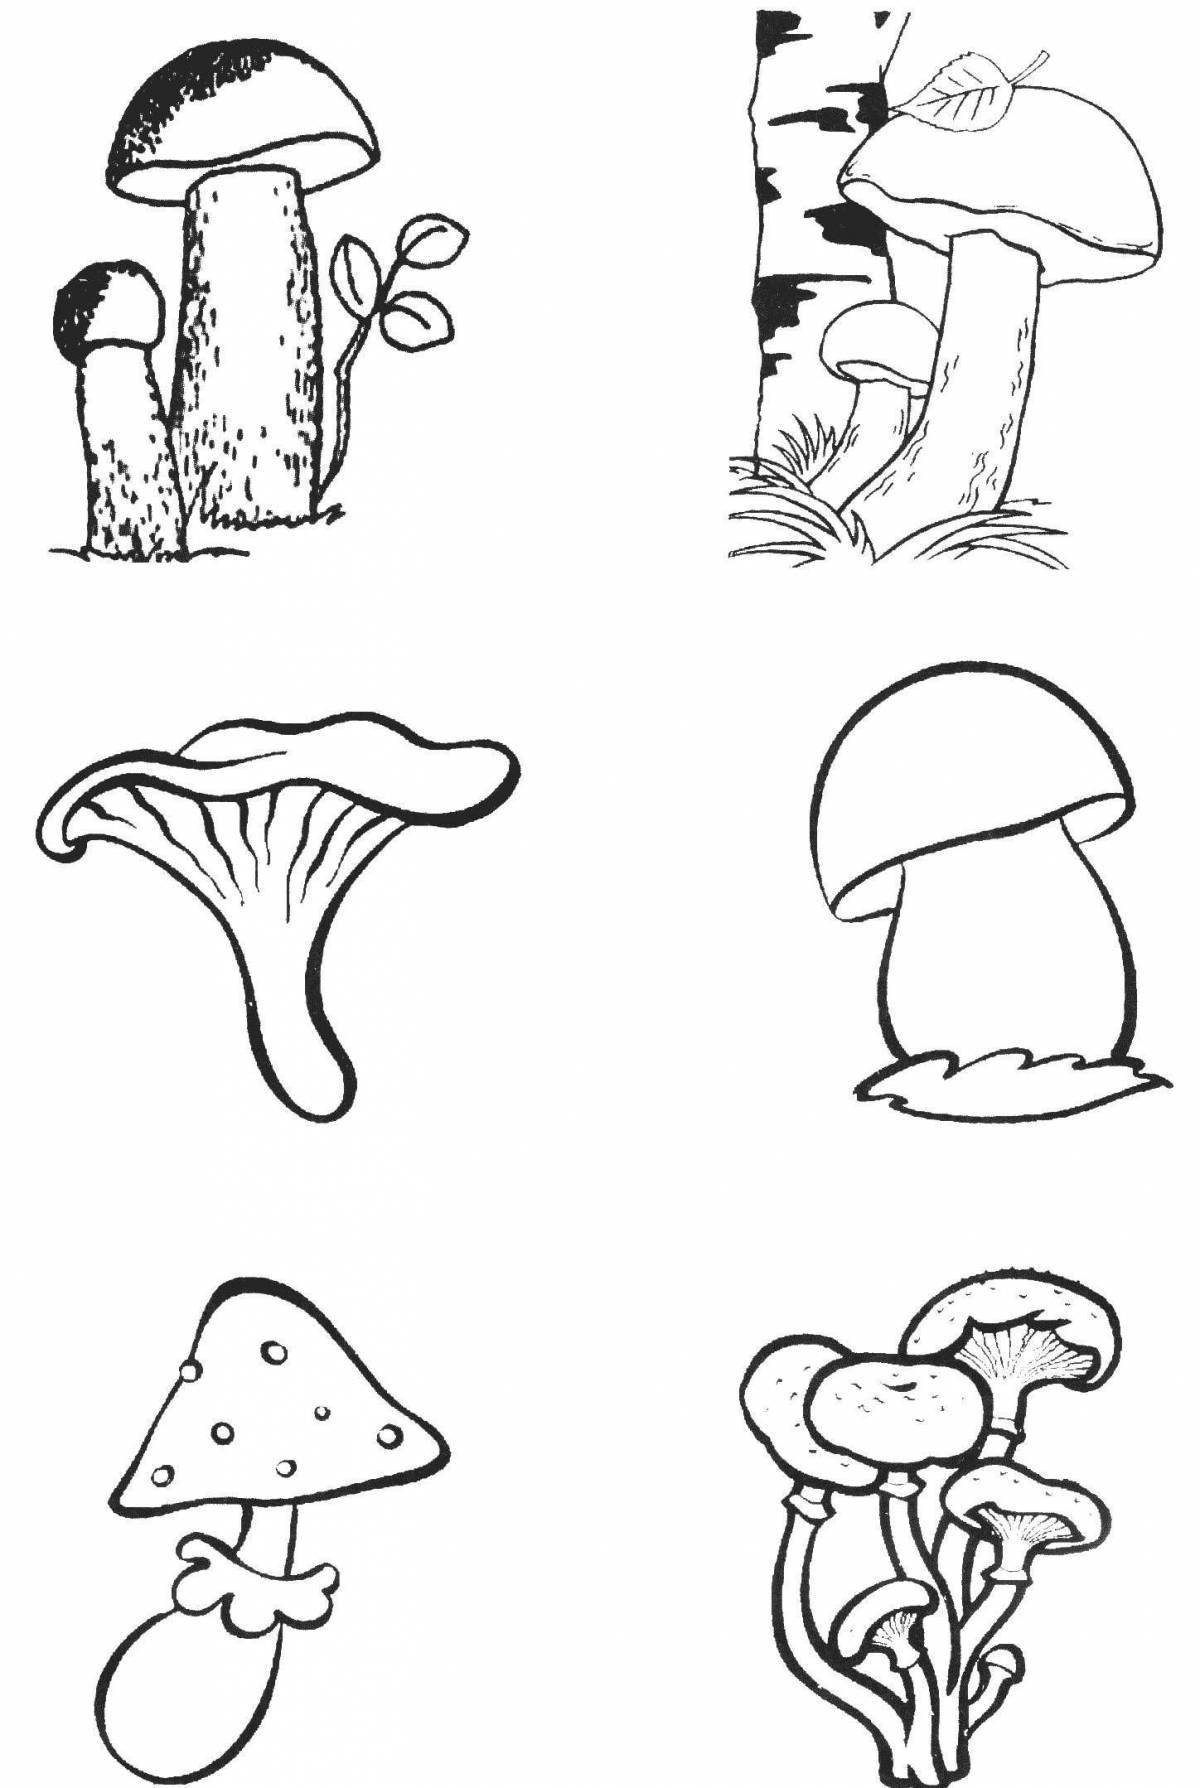 Captivating inedible mushrooms